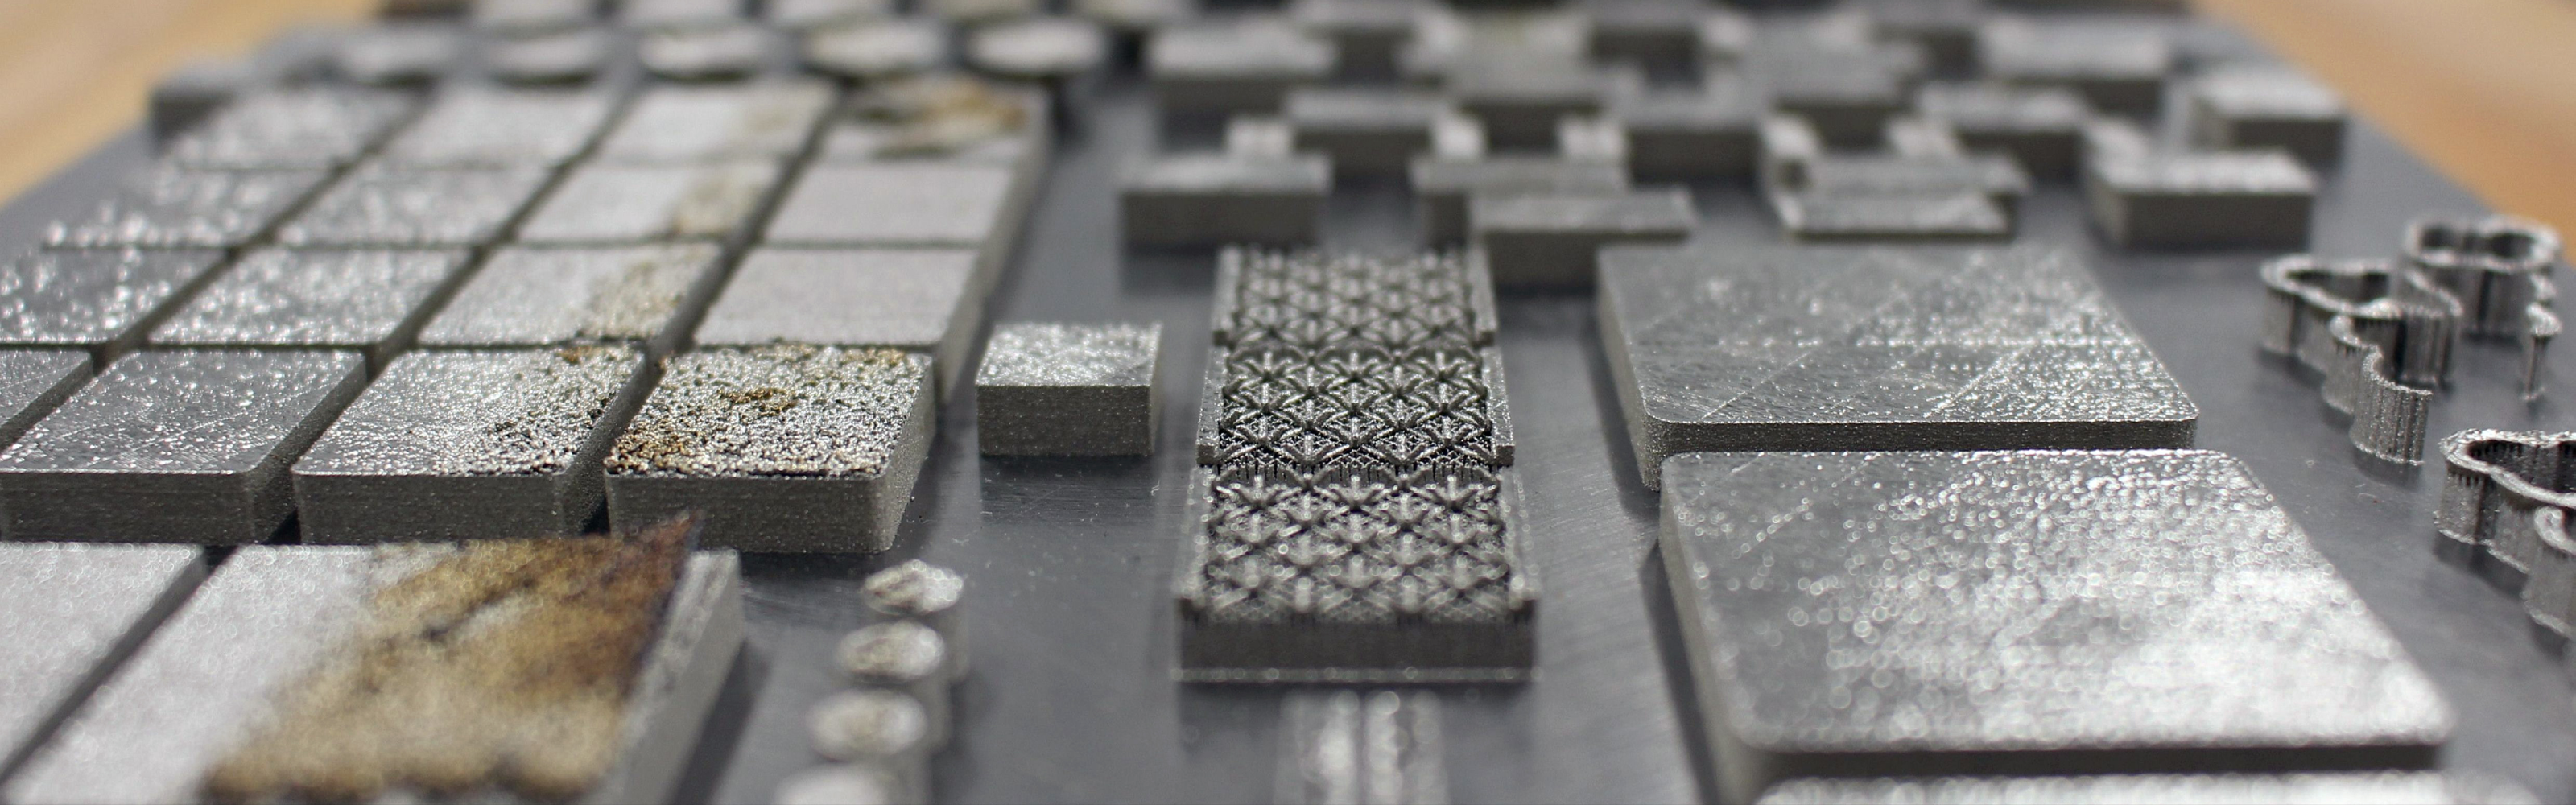 3D Printed Metals - Aaron Stebner